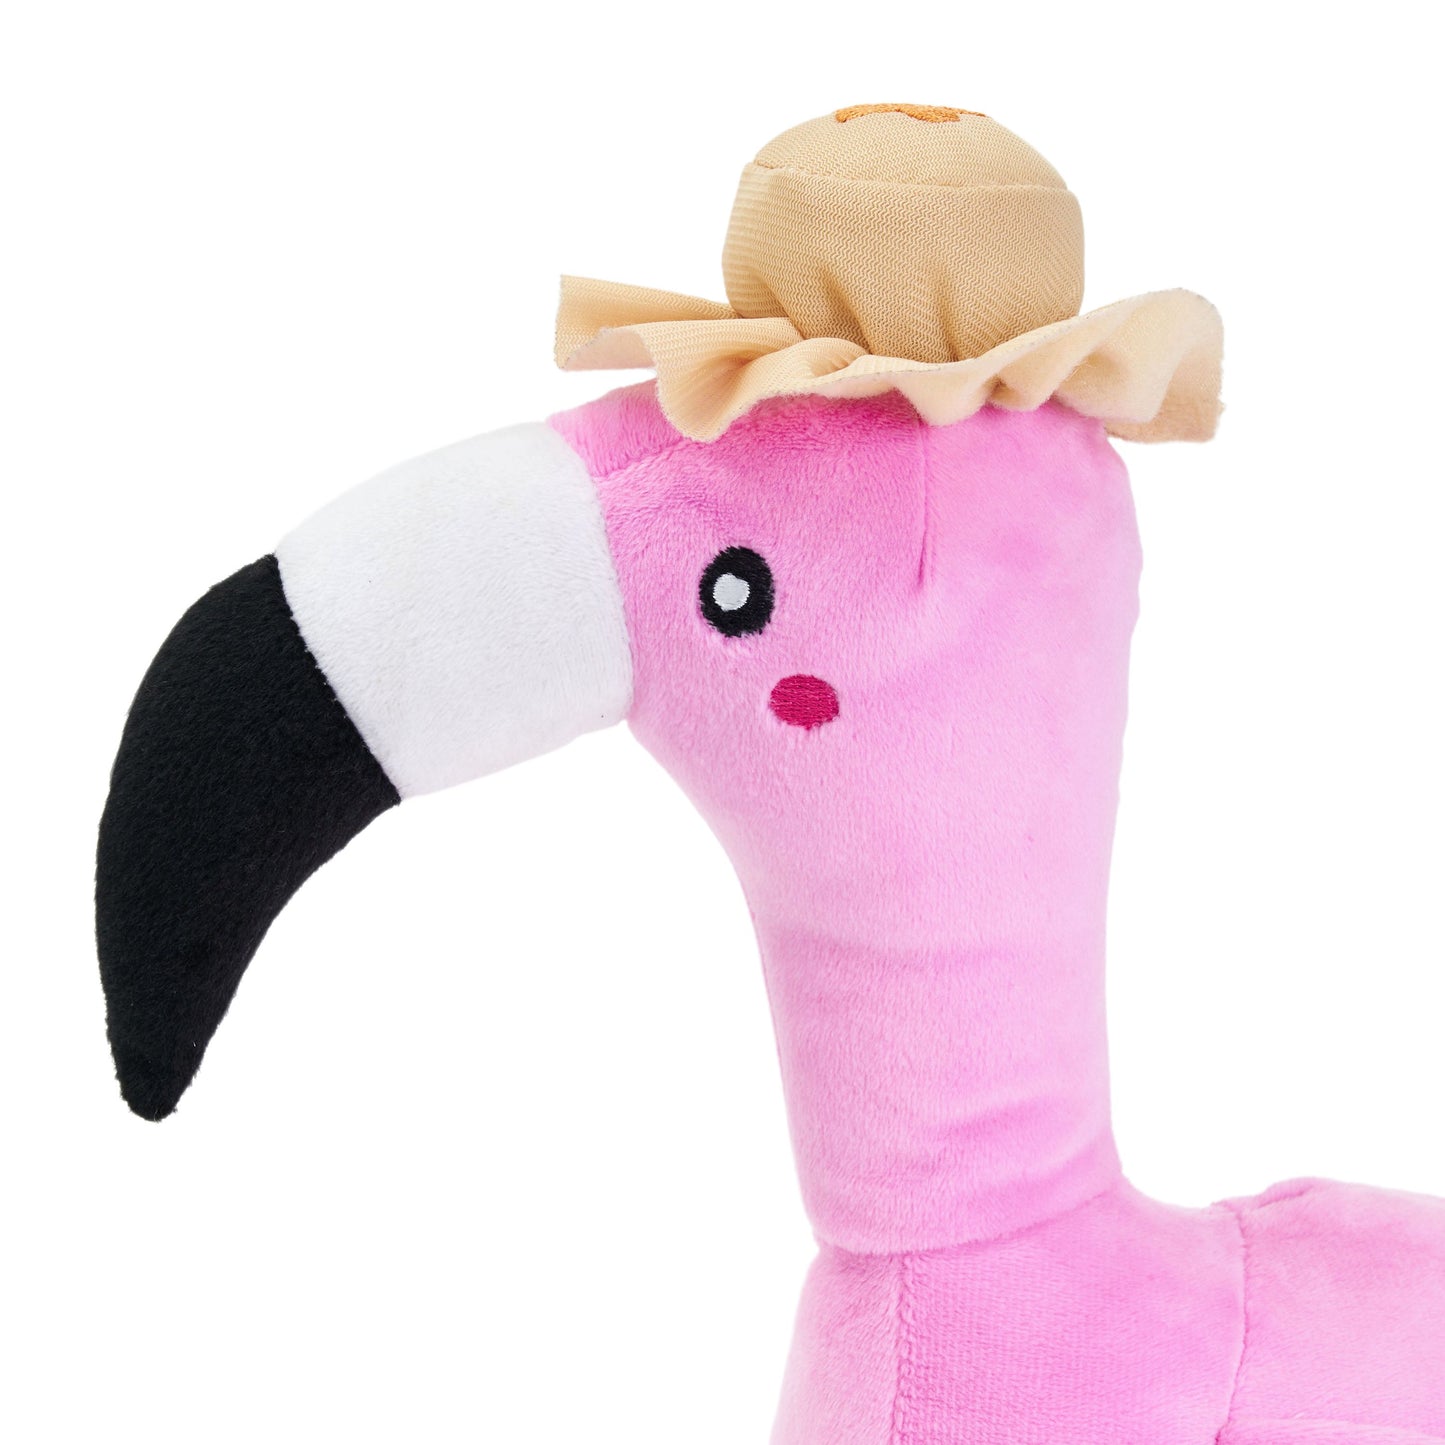 Freya The Flamingo Plush Toy